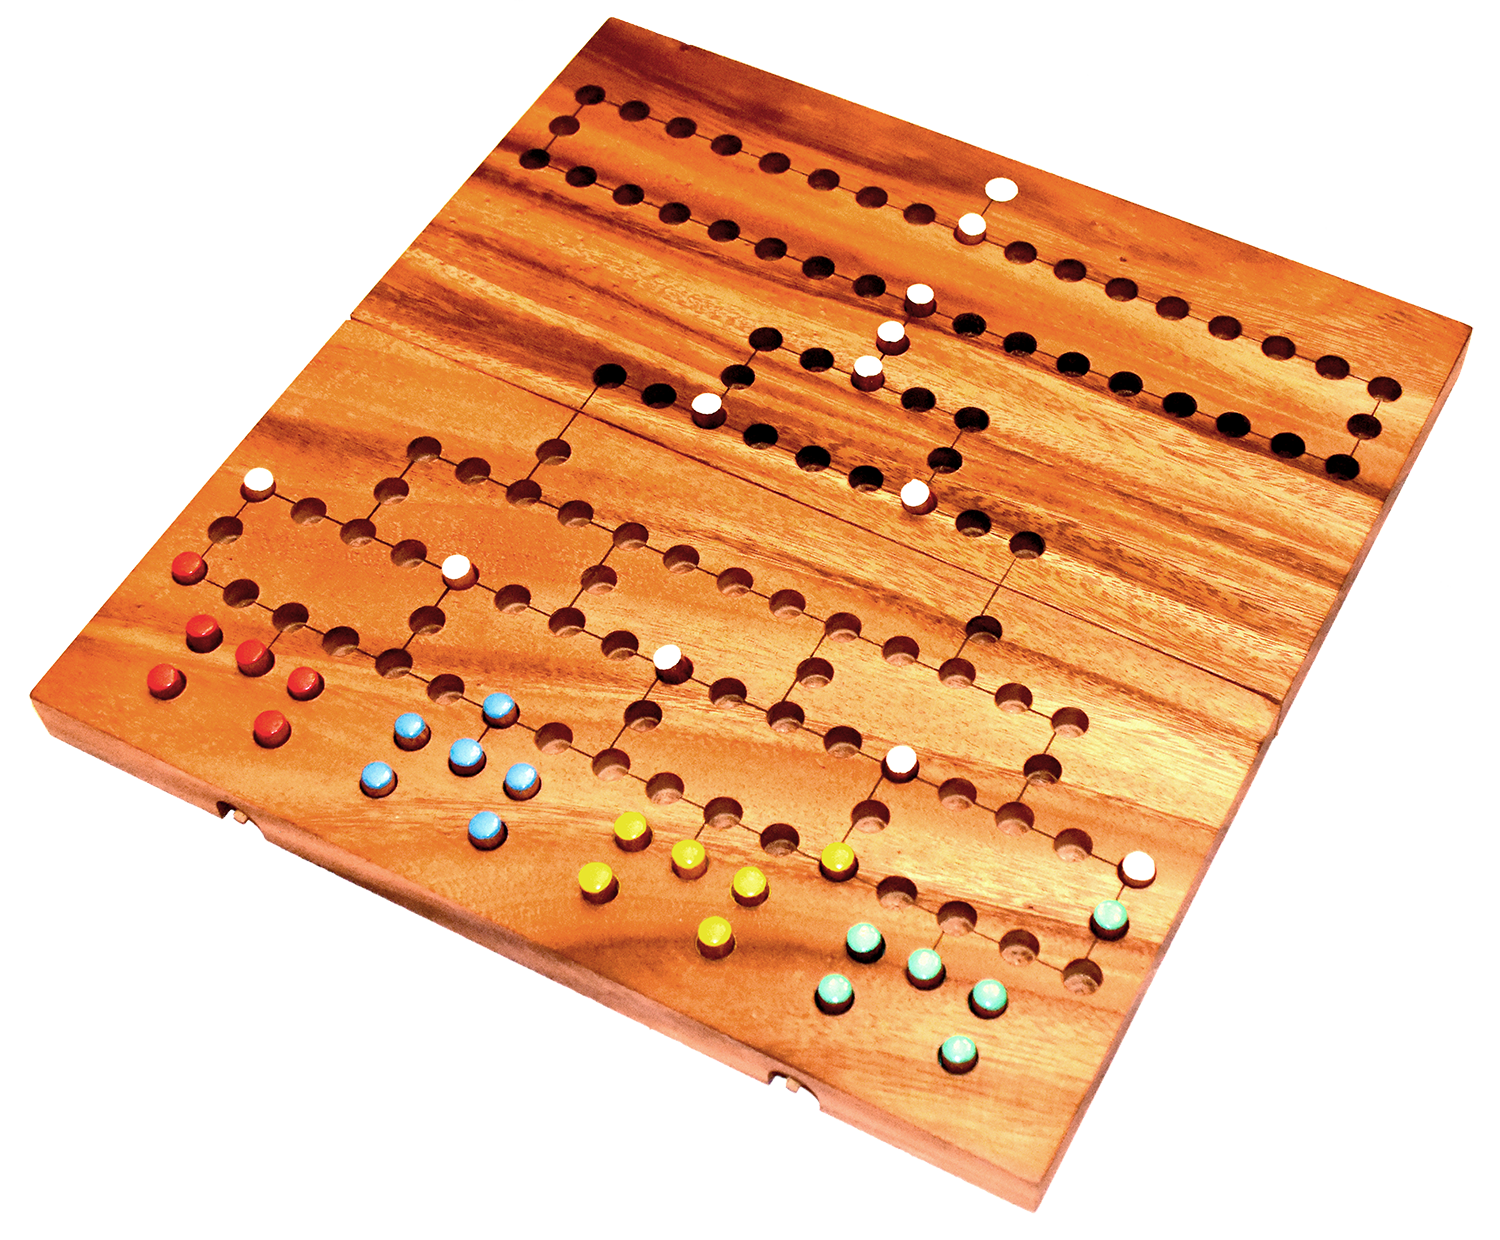 Barricade Blockade Würfelspiel in einem Klappbrett aus Holz Xlarge 35,0 x 35,0 x 3,5 cm, Knobelholz Würfelspiel für 4 Spieler 